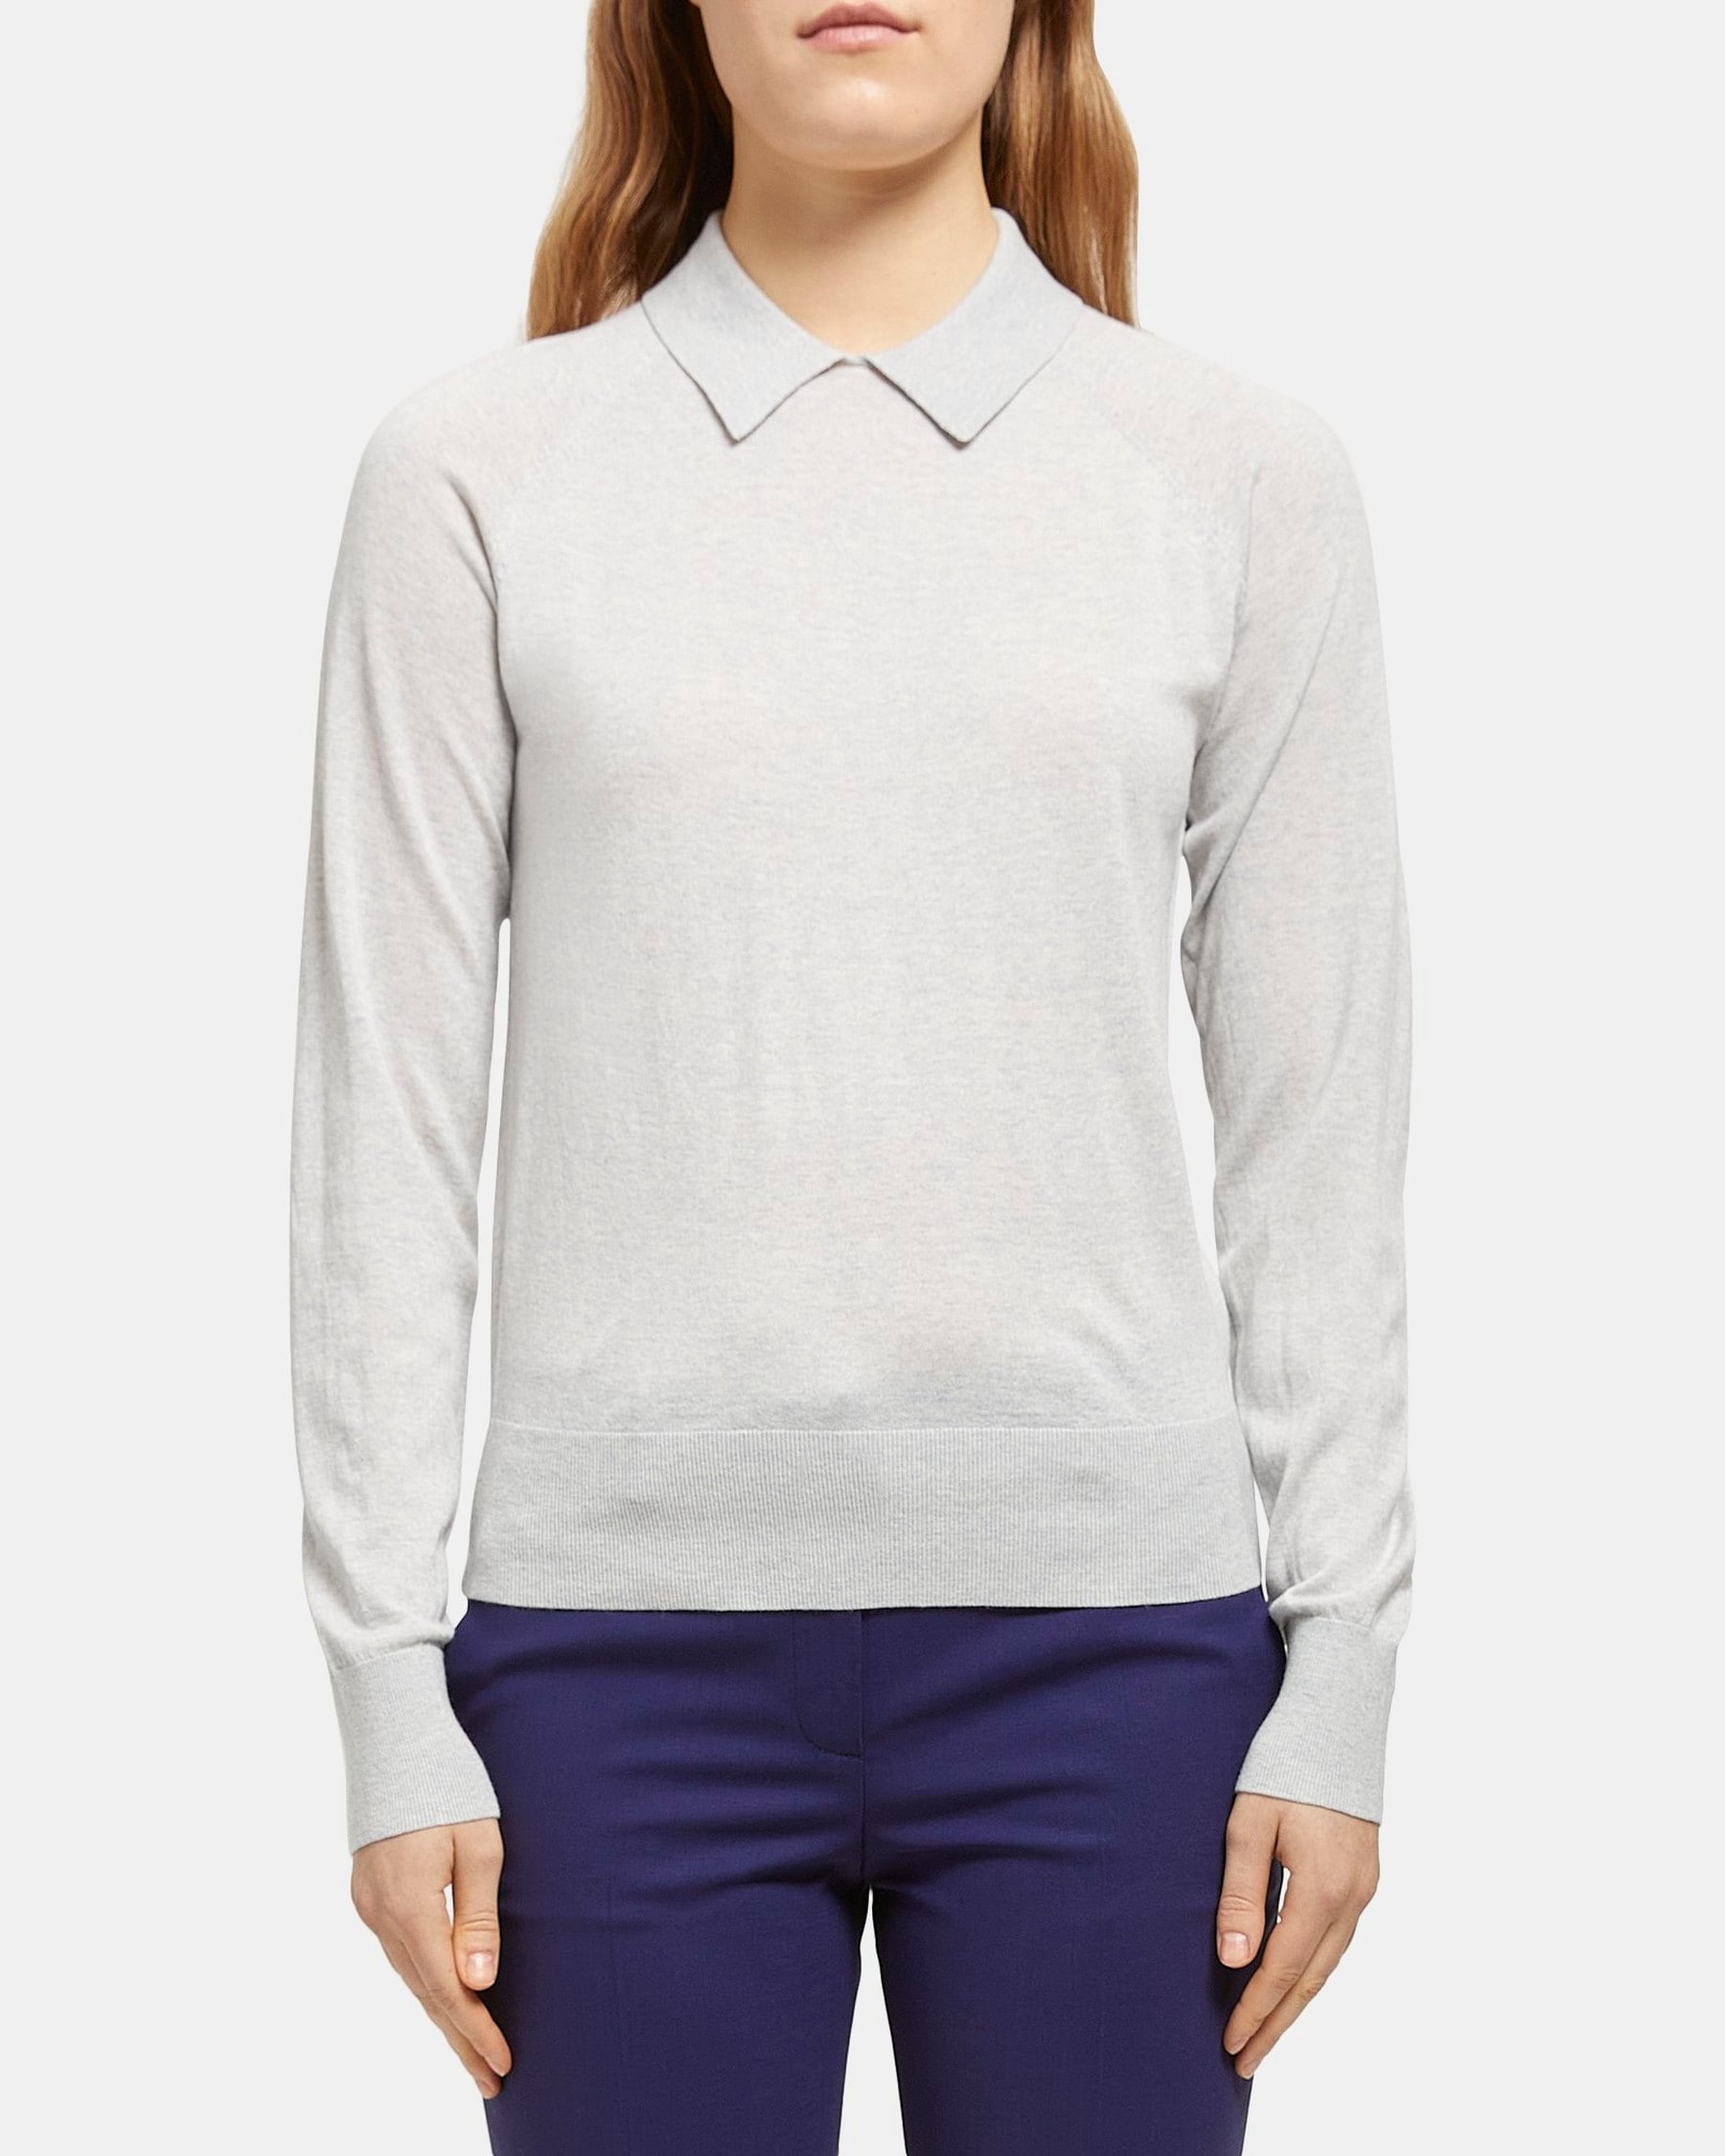 Collared Sweater in Merino Wool